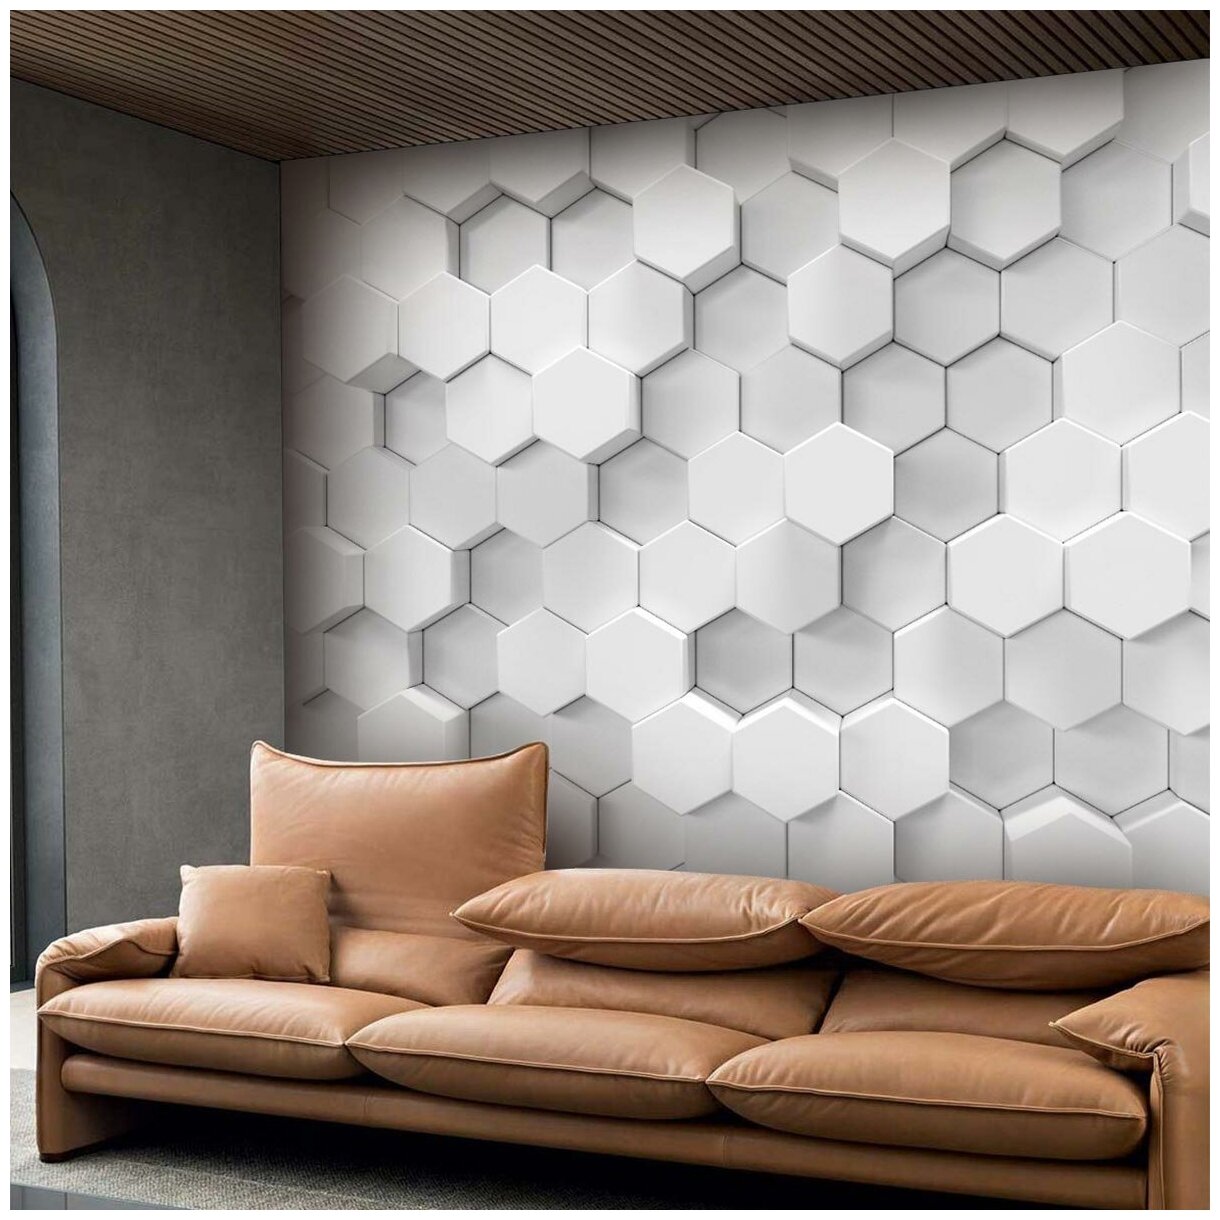 Фотообои флизелиновые с виниловым покрытием VEROL "Шестиугольники 3D", 300х283 см, моющиеся обои на стену, декор для дома